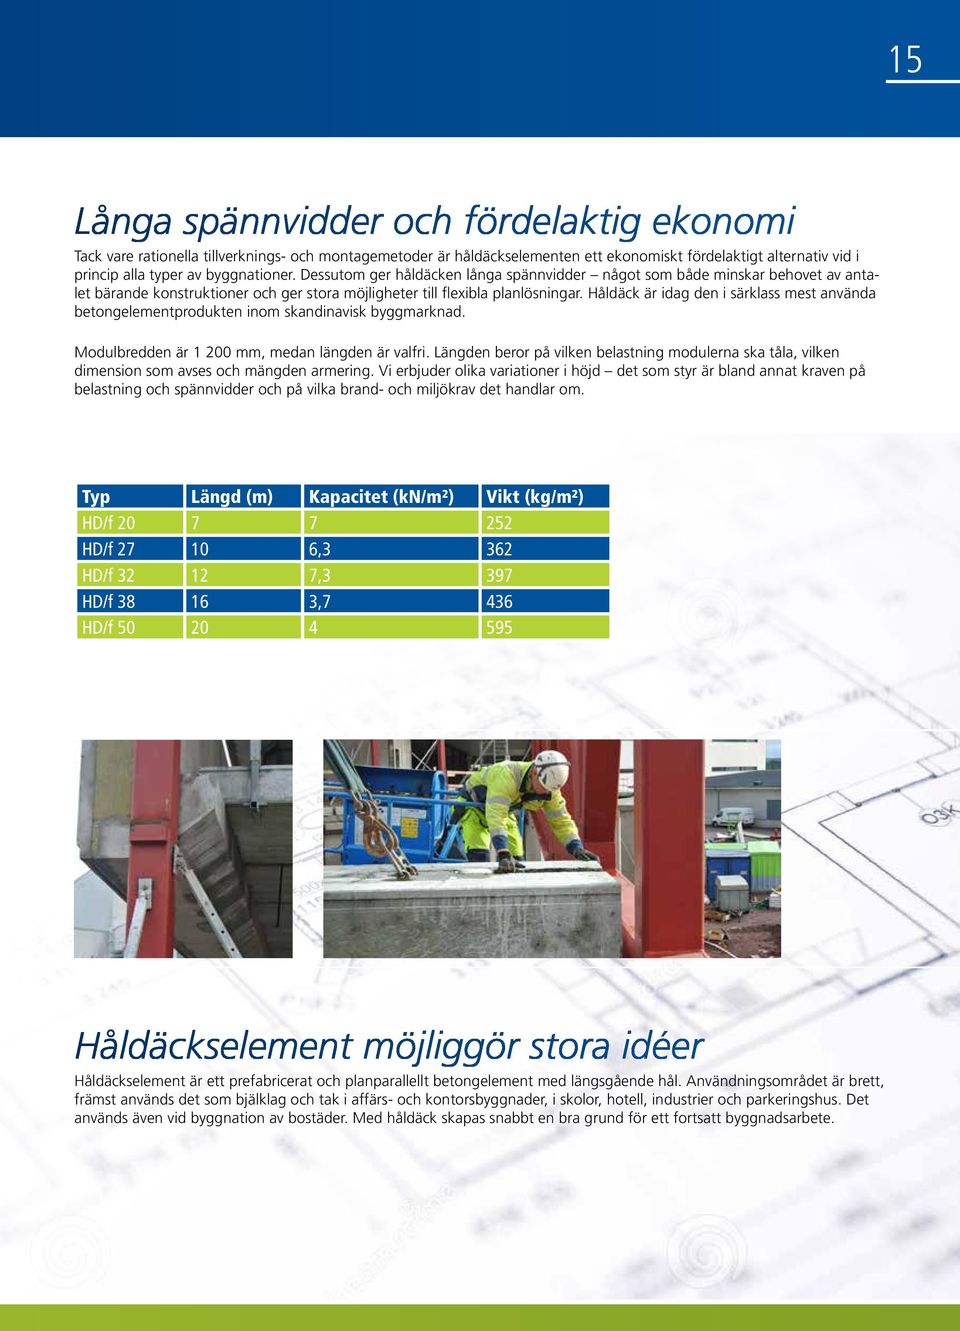 Håldäck är idag den i särklass mest använda betongelementprodukten inom skandinavisk byggmarknad. Modulbredden är 1 200 mm, medan längden är valfri.